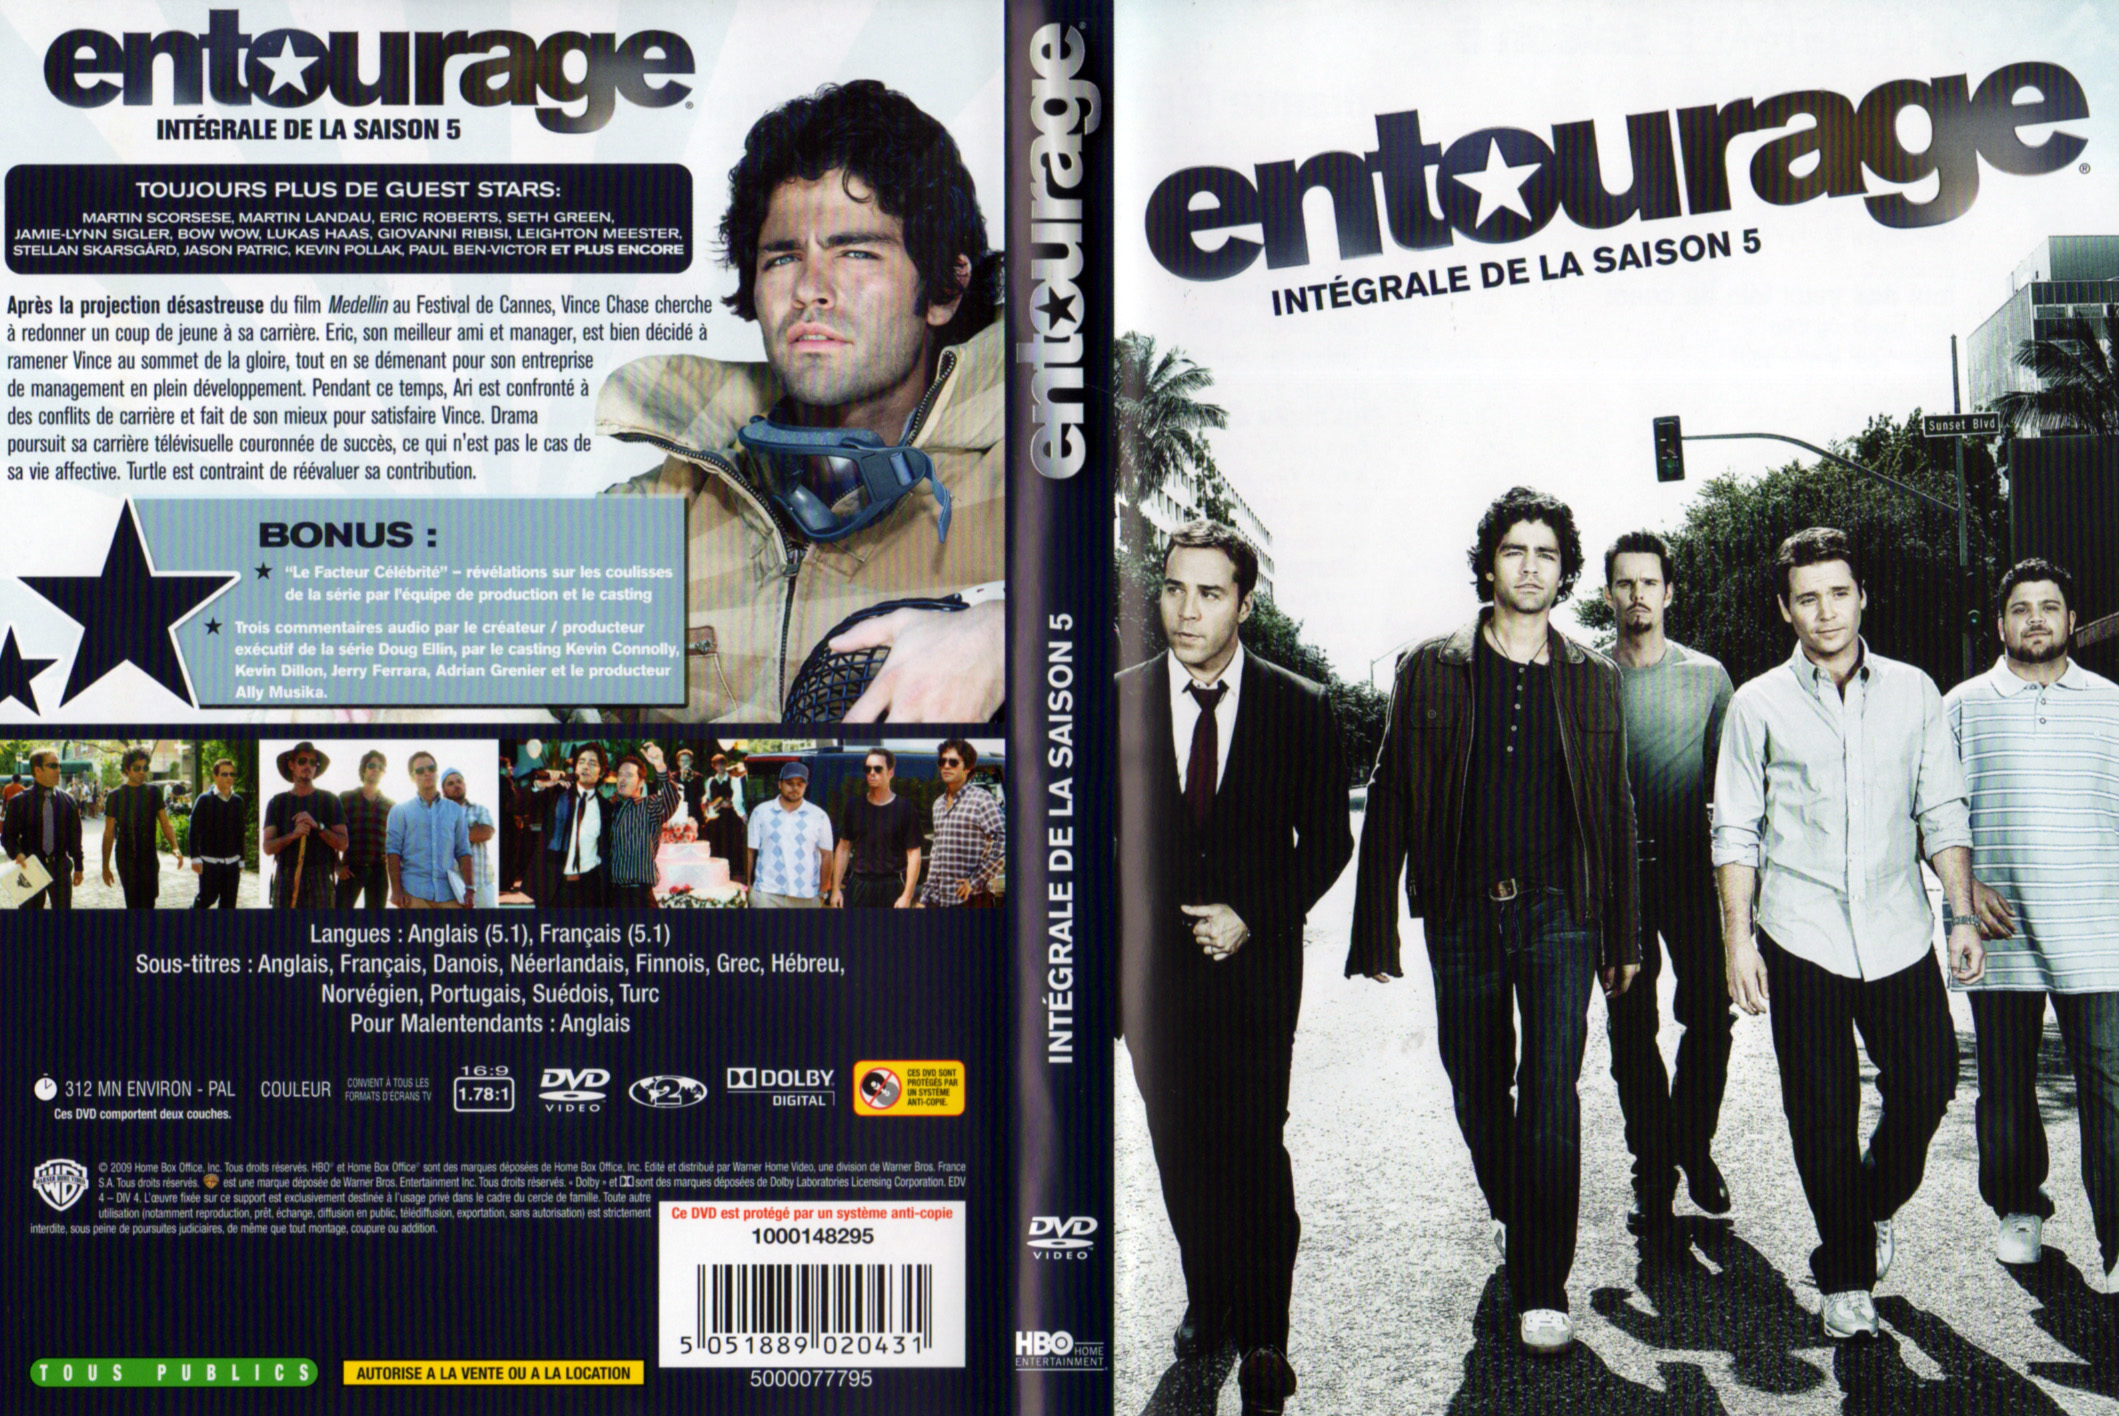 Jaquette DVD Entourage Saison 5